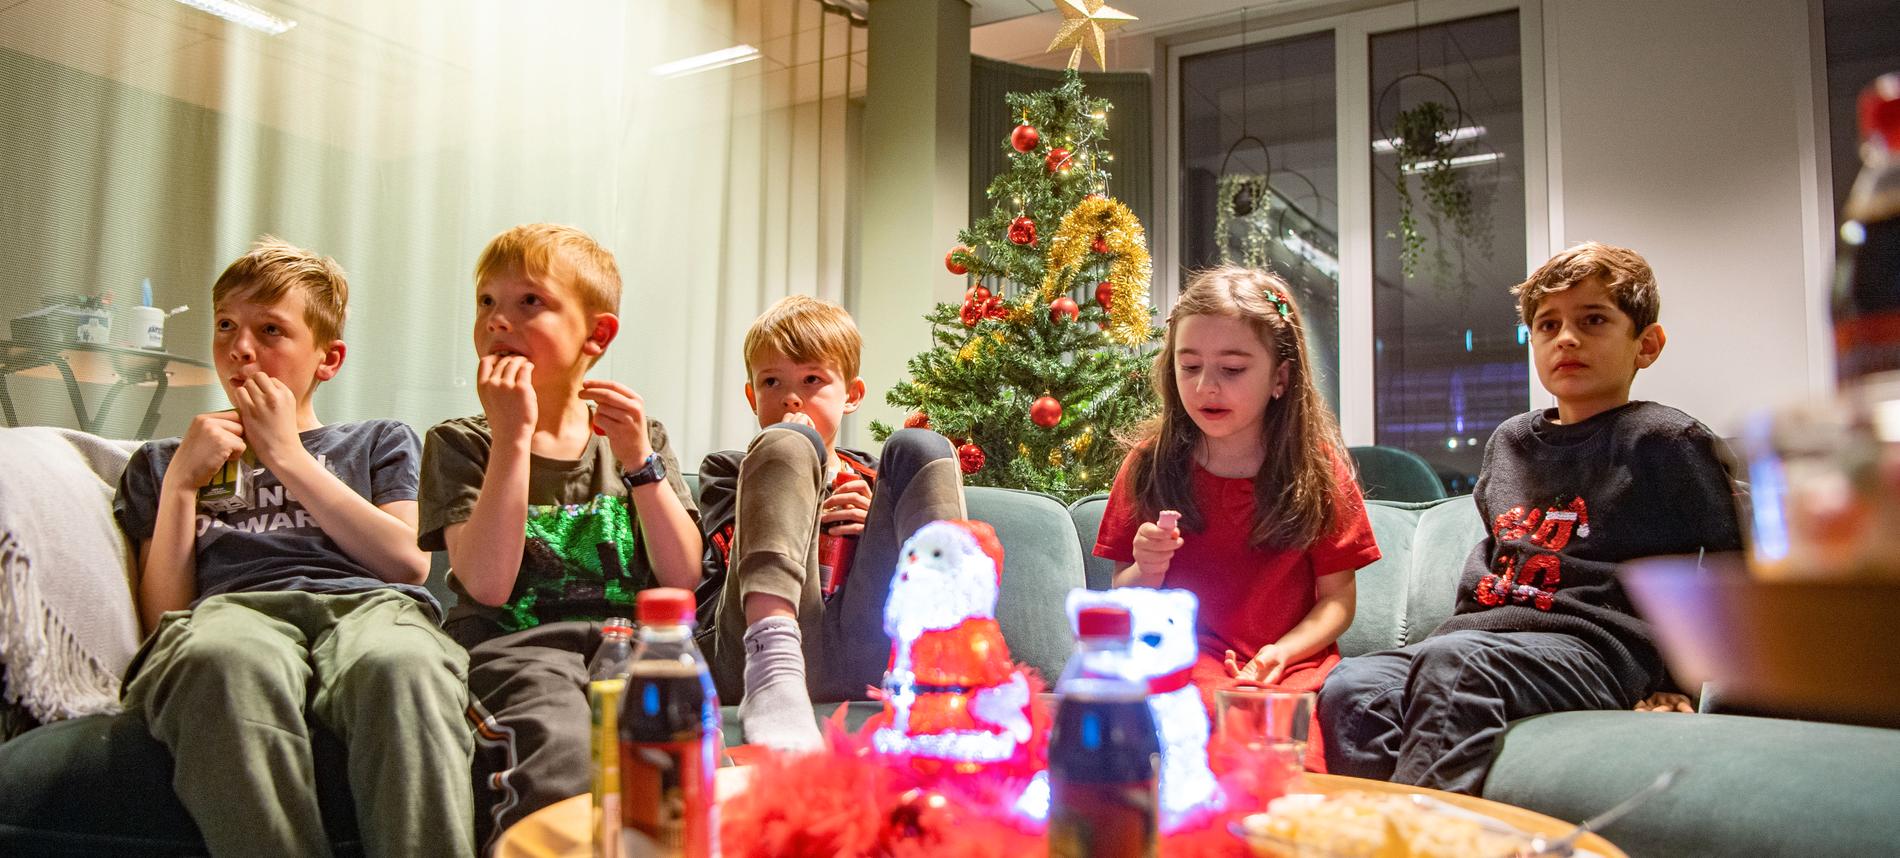 Barnpanelen förhandstittar på SVT:s julkalender ”En hederlig jul med Knyckertz”.